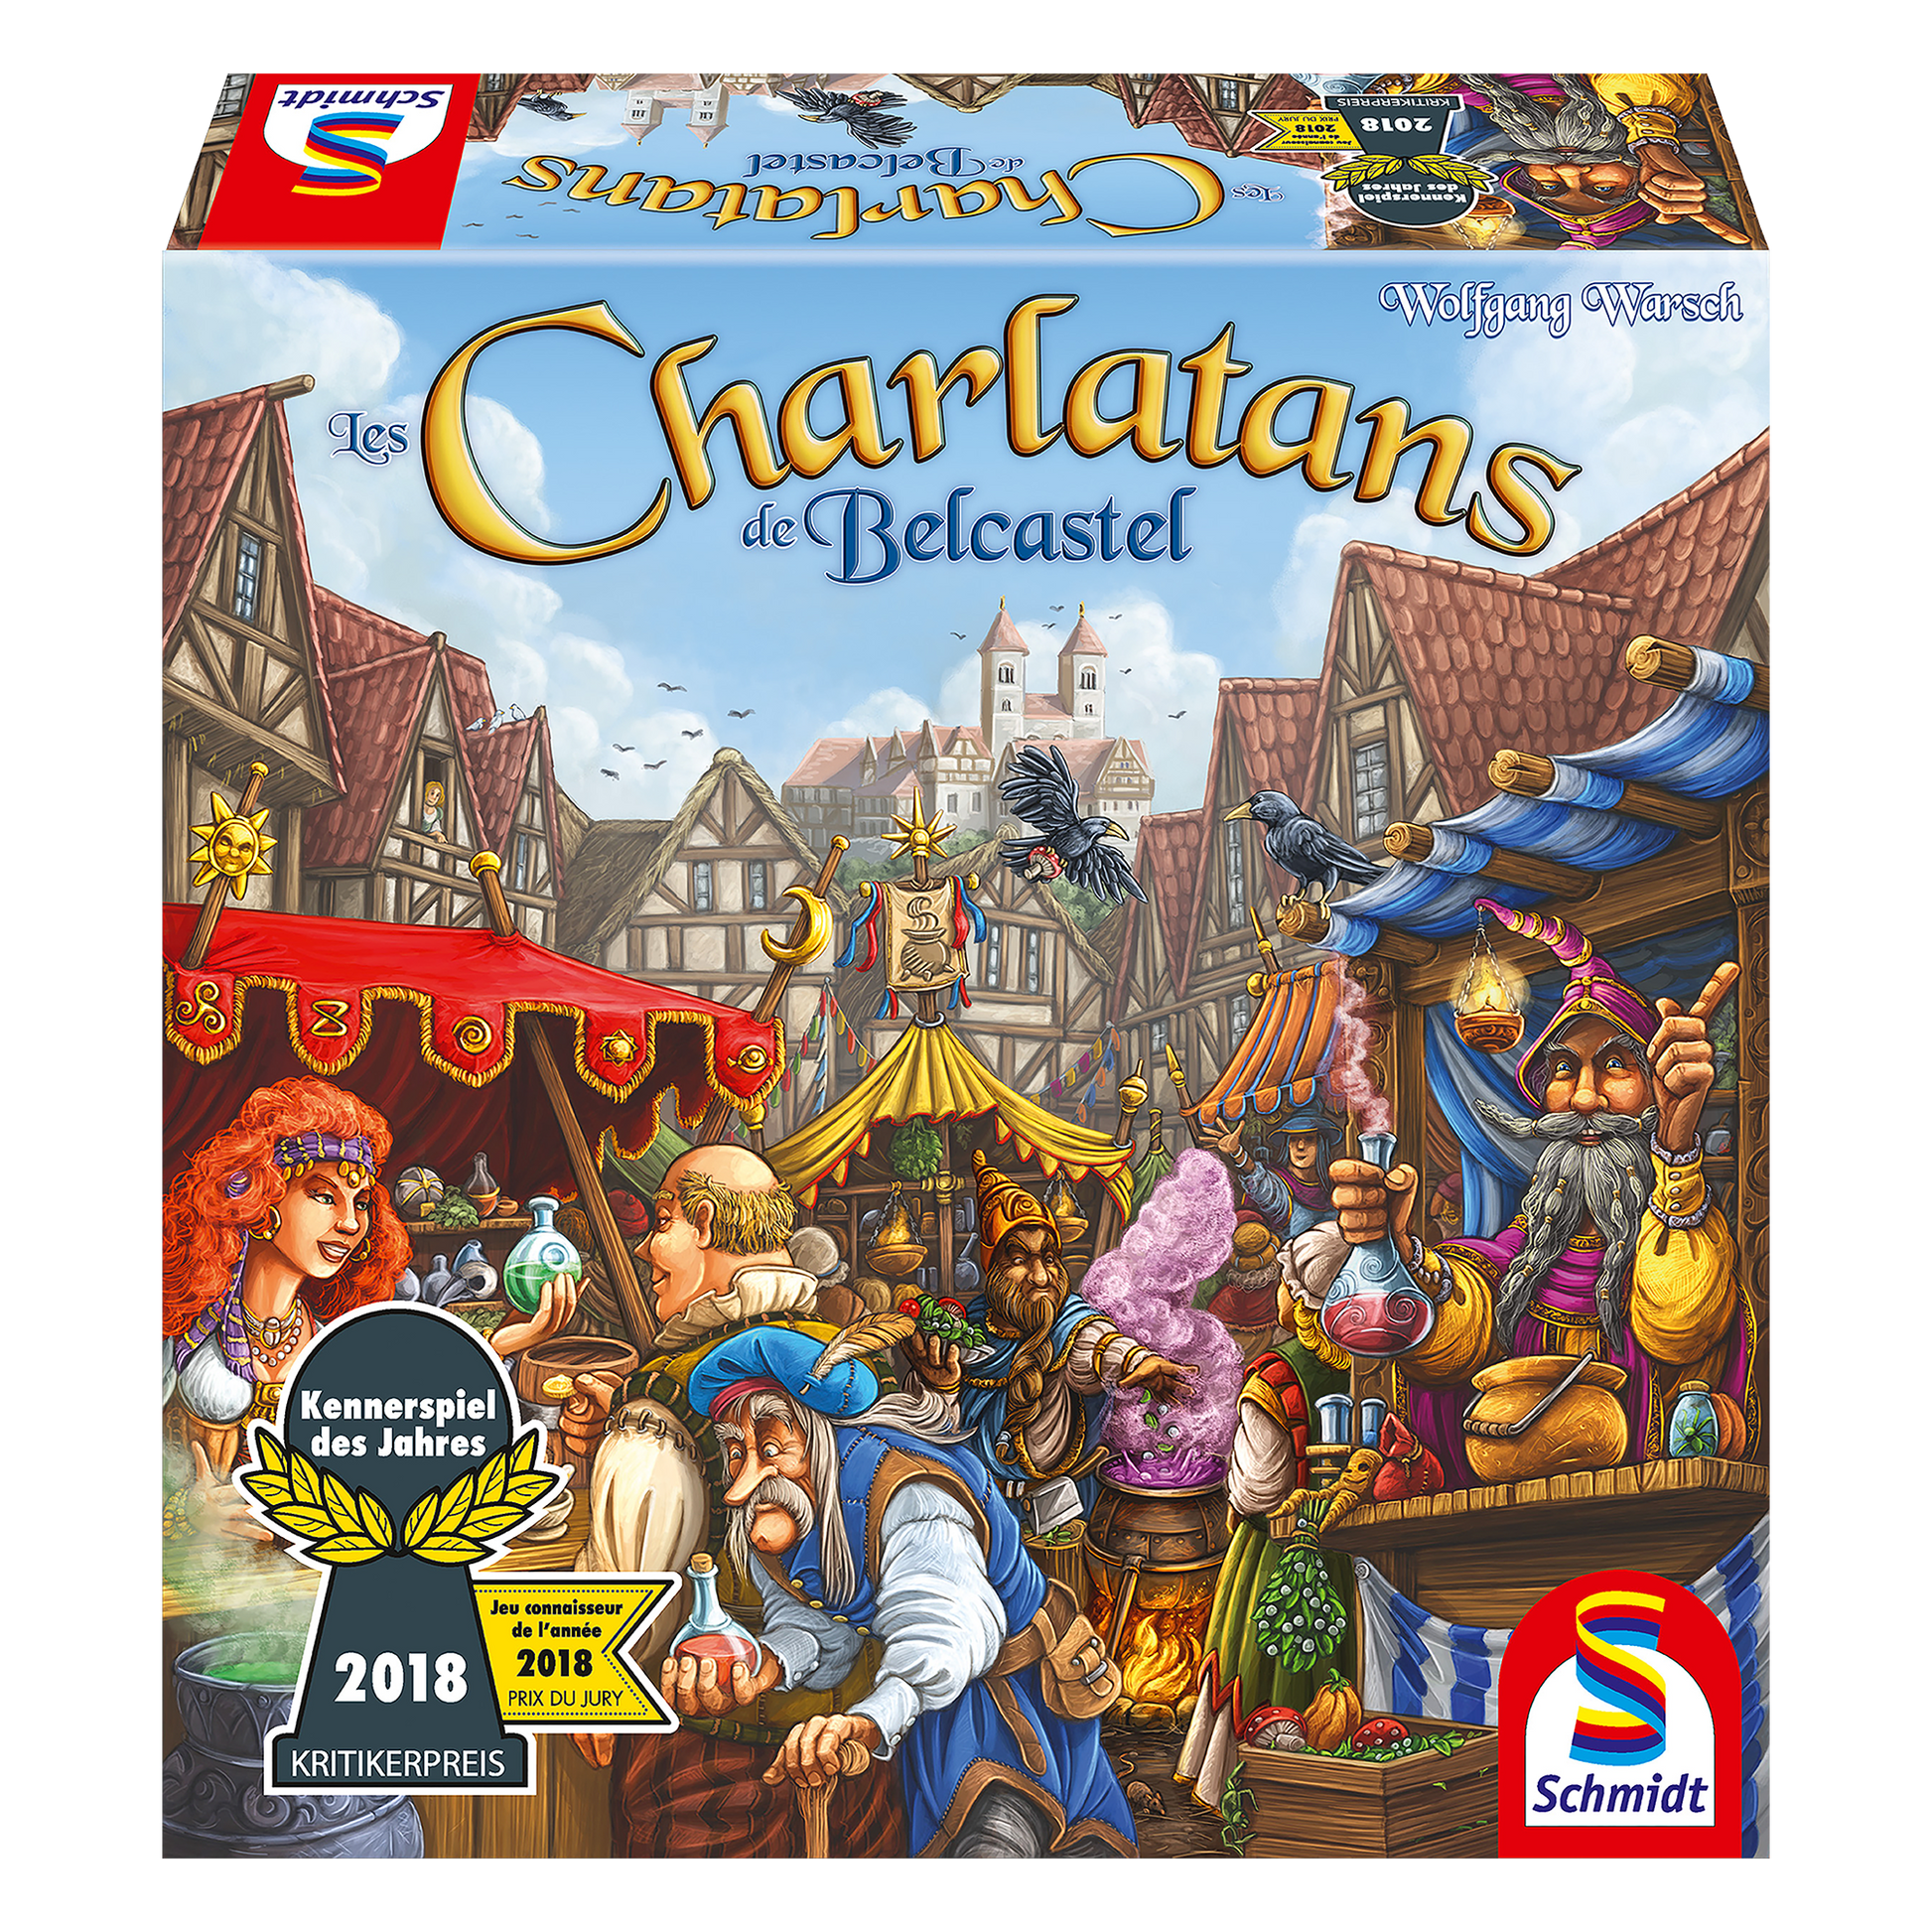 Boîte du jeu Charlatans de Belcastel en Français